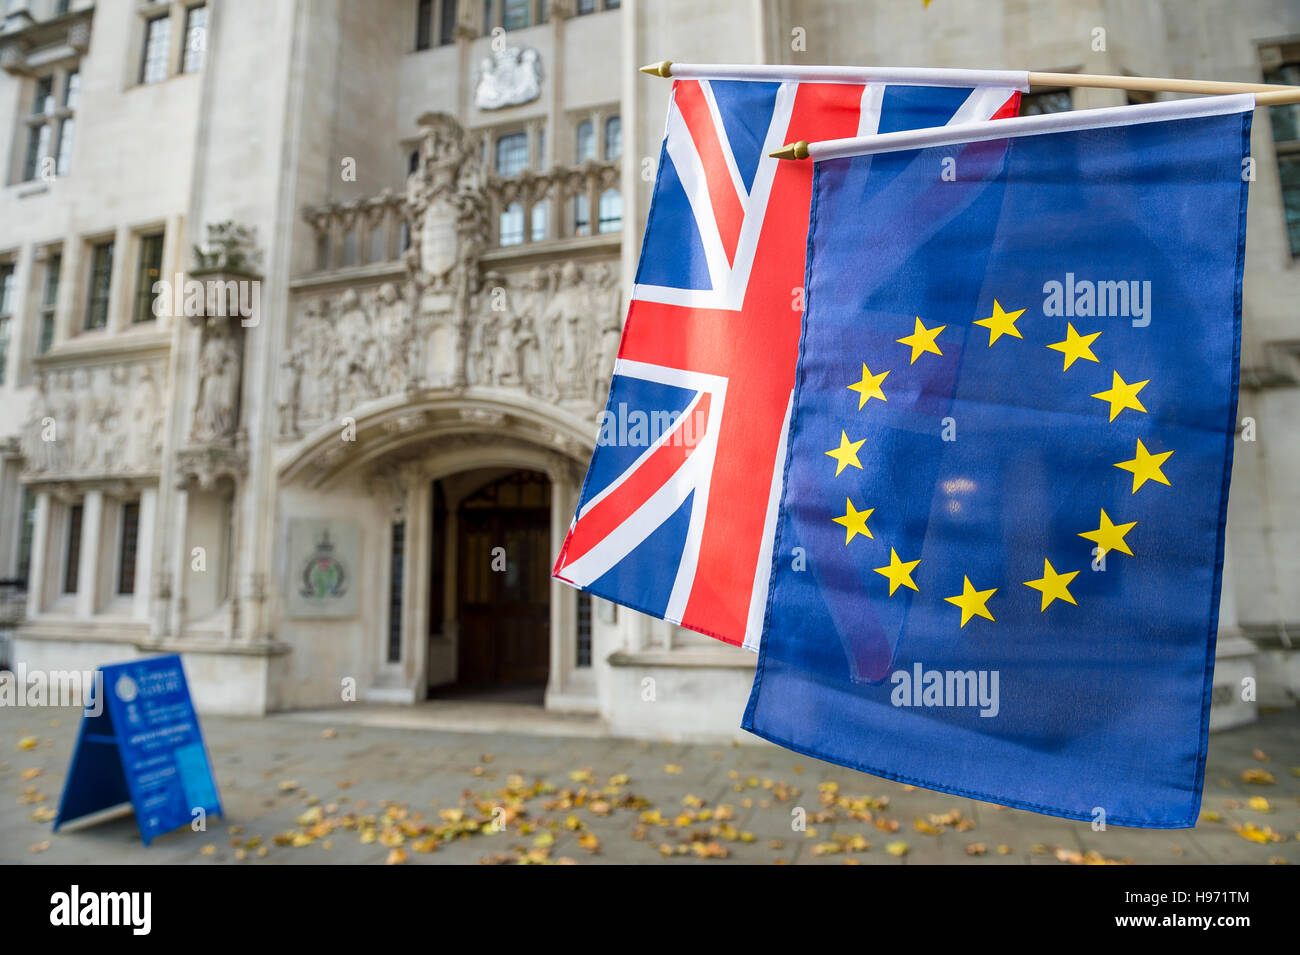 EU und Union Jack Fahnen an der oberste Gerichtshof des Vereinigten Königreichs in den öffentlichen Middlesex Guildhall Gebäude, London Stockfoto